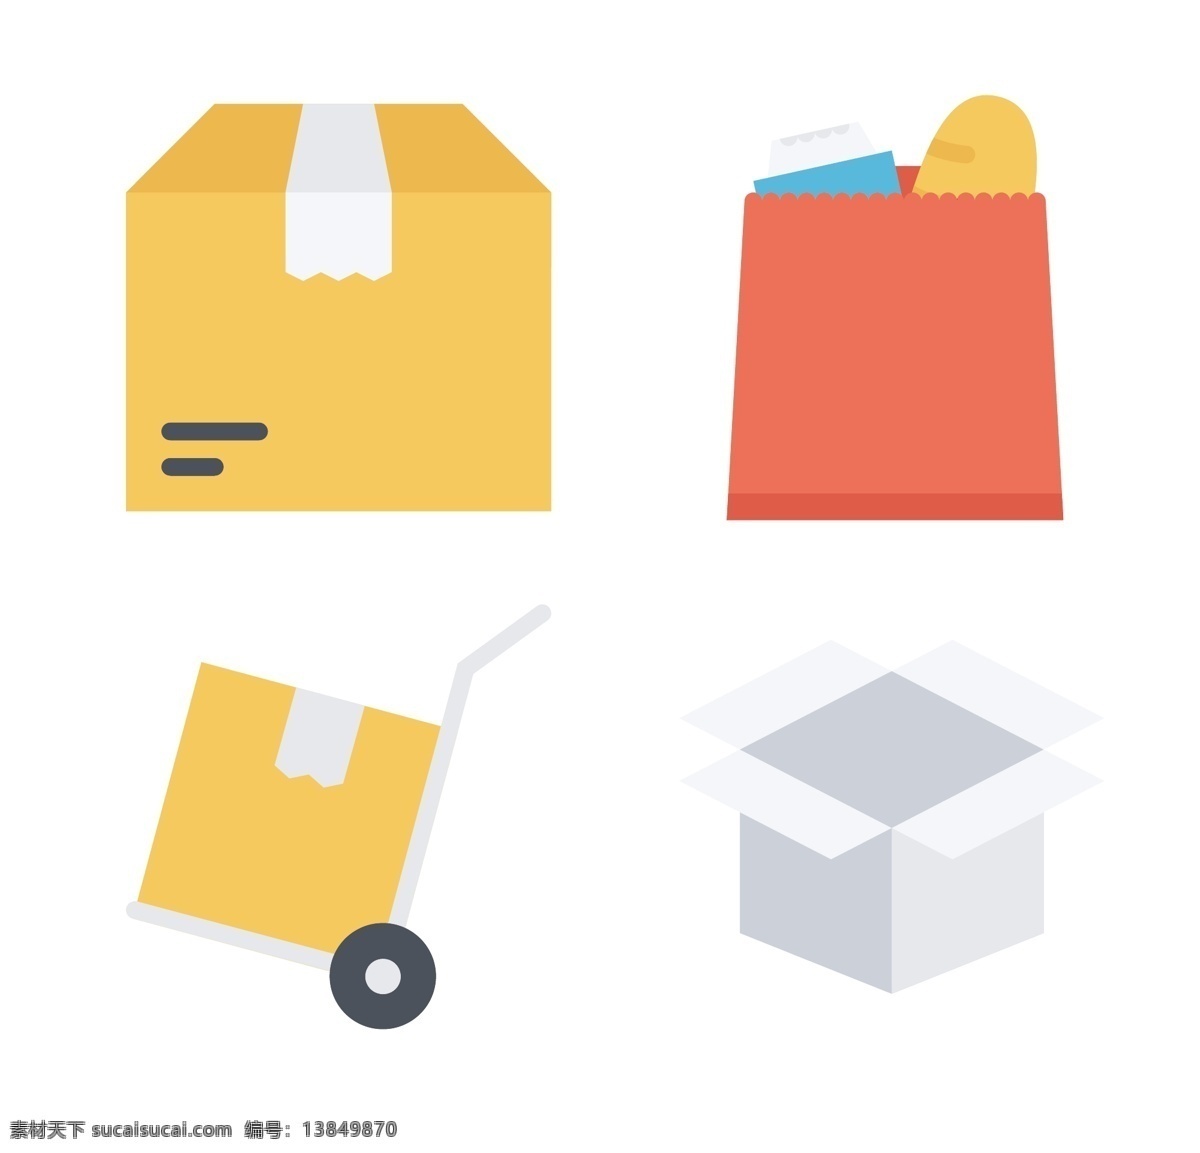 超市 商店 icon 图标 标志 礼品 购物车 图标设计 图标下载 网页图标 创意图标 表情图标 迷你图标 通用图标